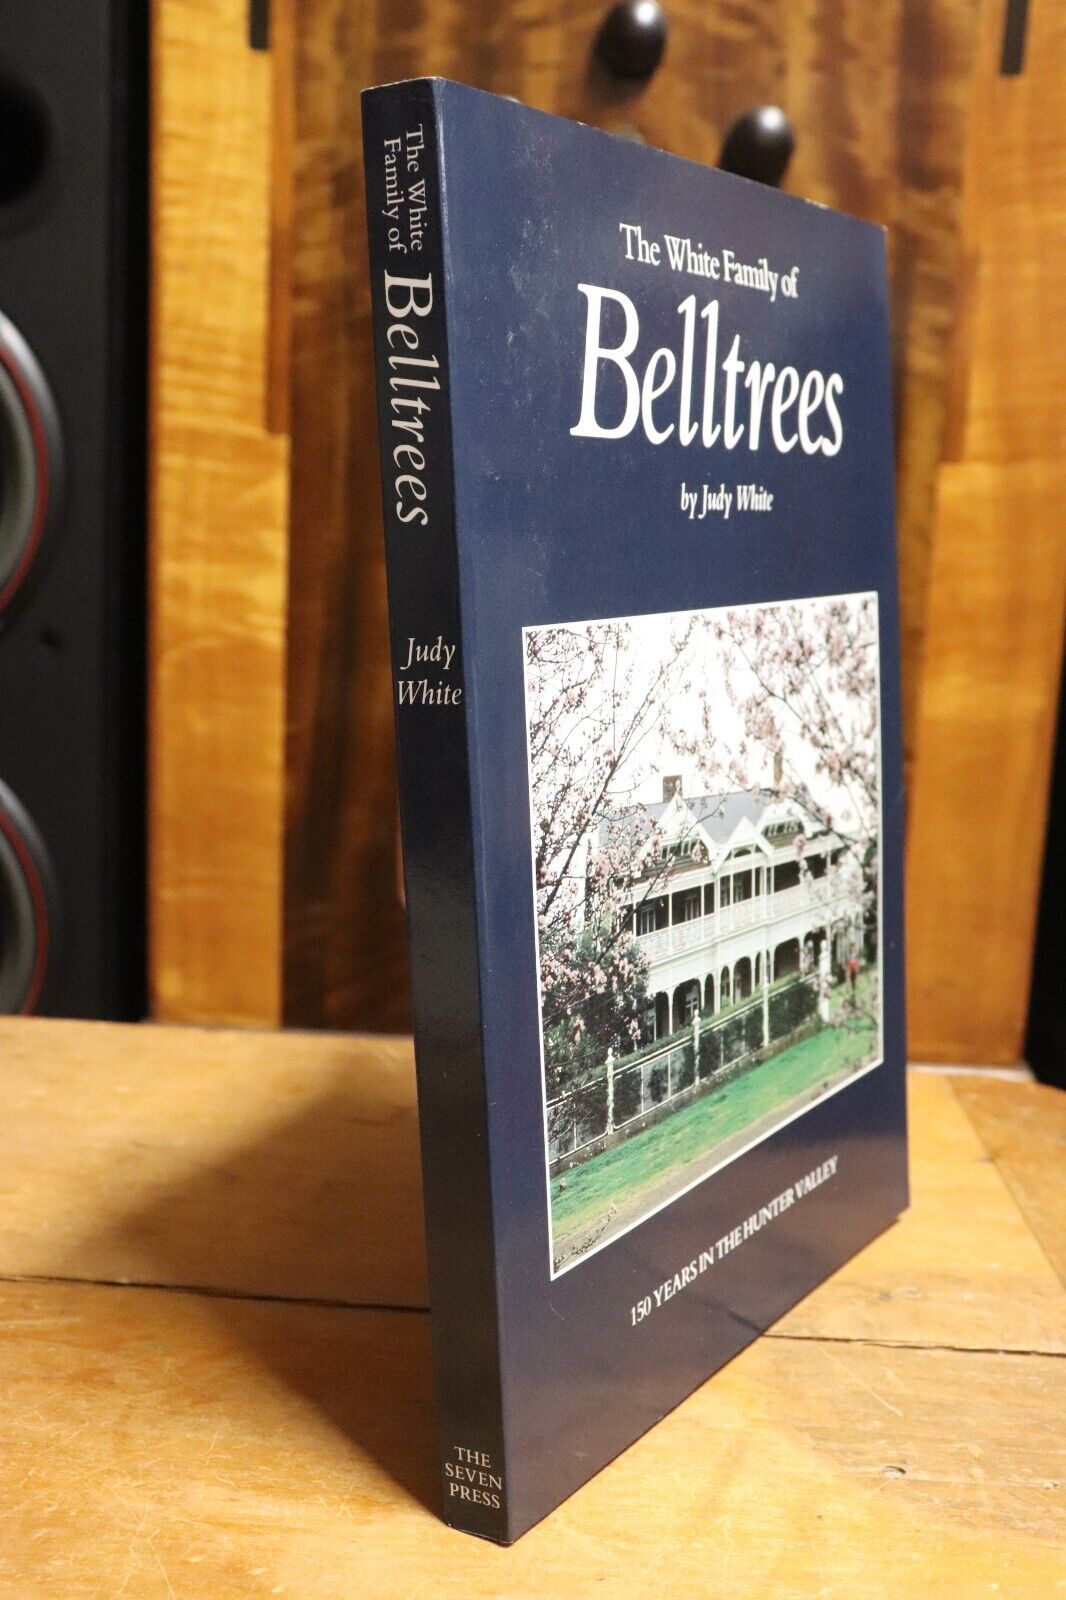 The White Family Of Belltrees: Hunter Valley - 1997 - Australian History Book - 0